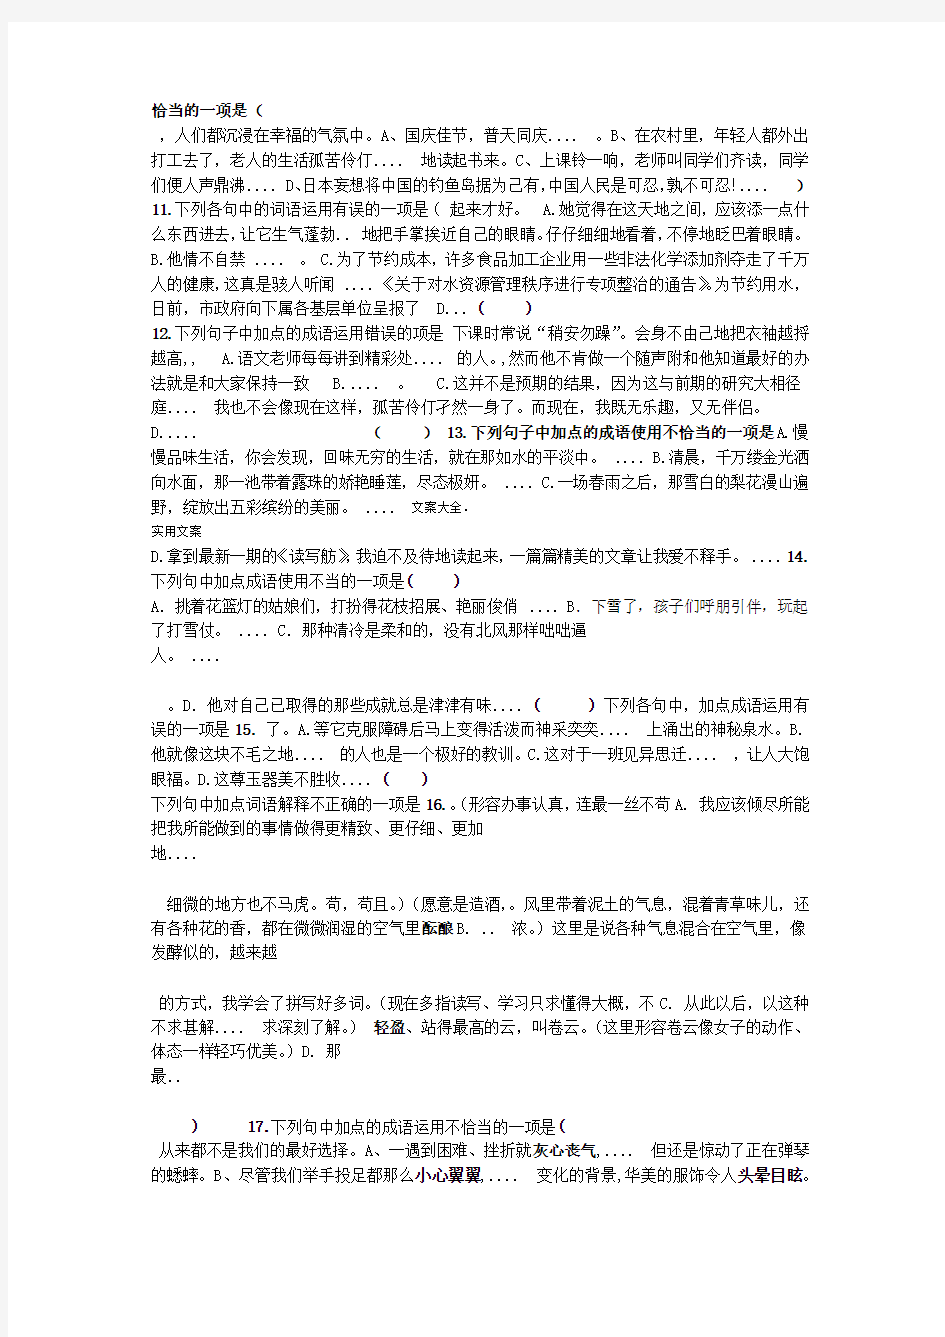 人教版部编教材新版初中语文词语成语运用题总汇编含问题详解